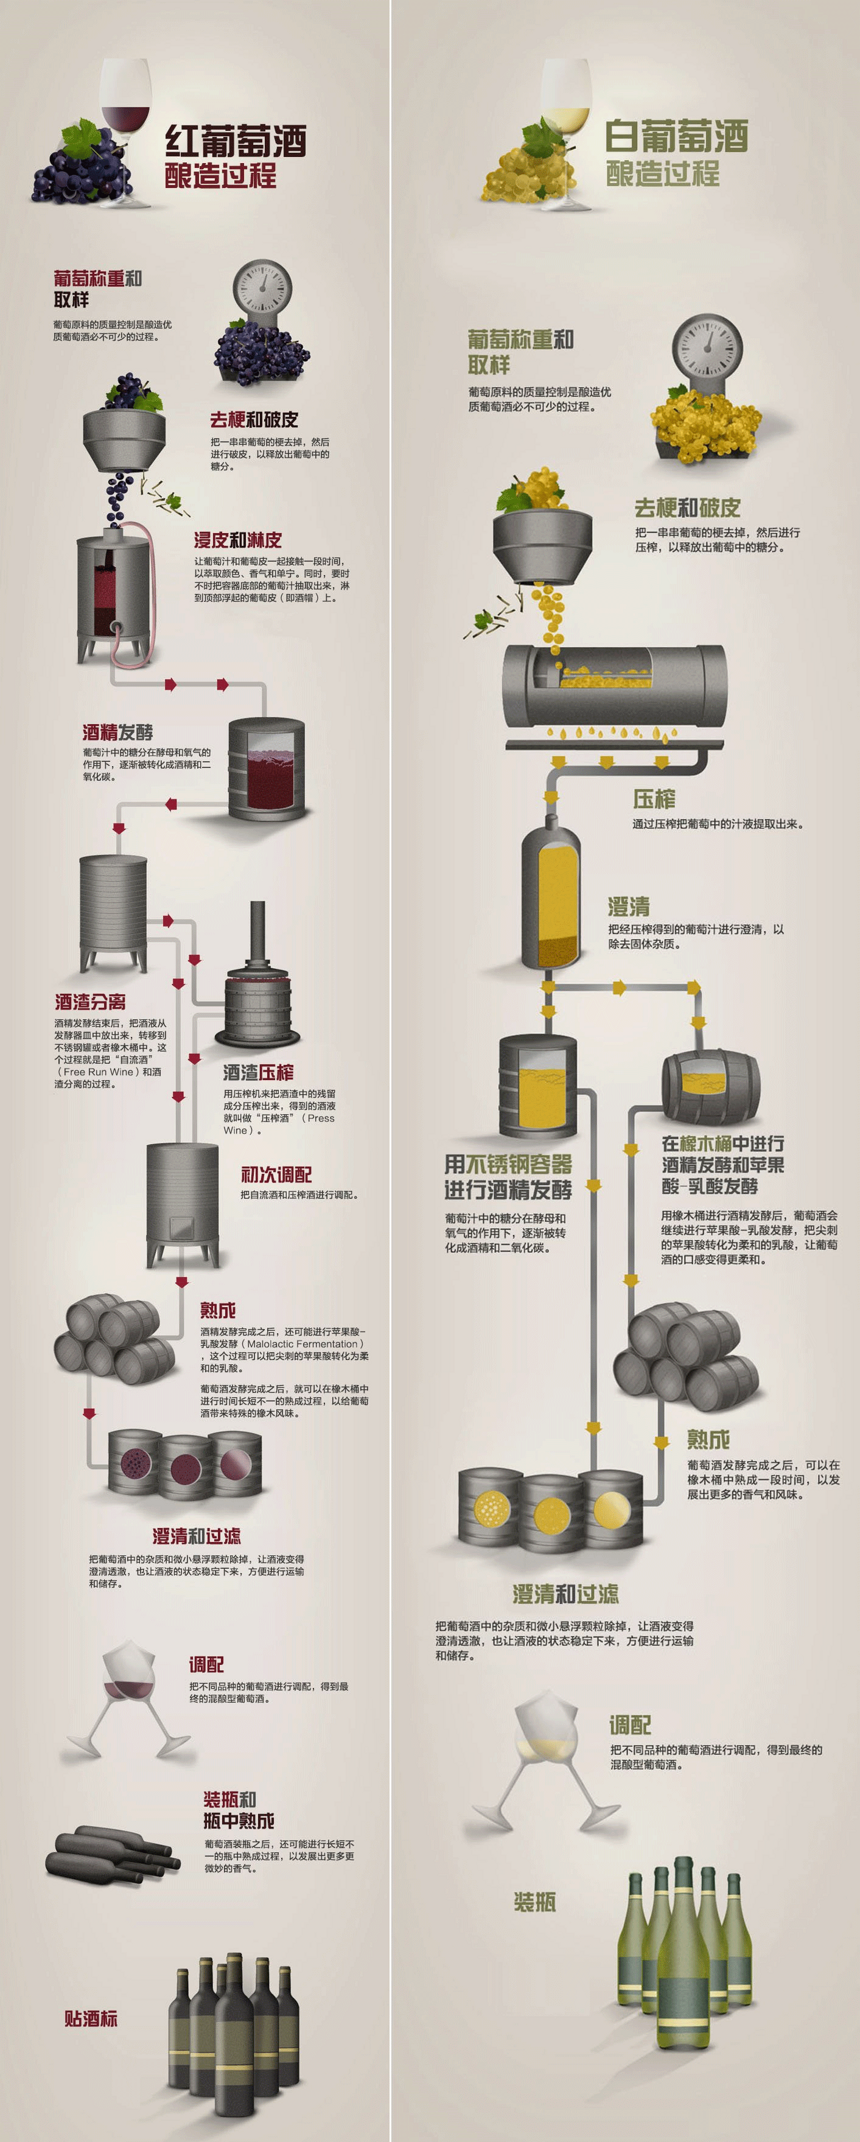 一张图了解葡萄酒酿制过程